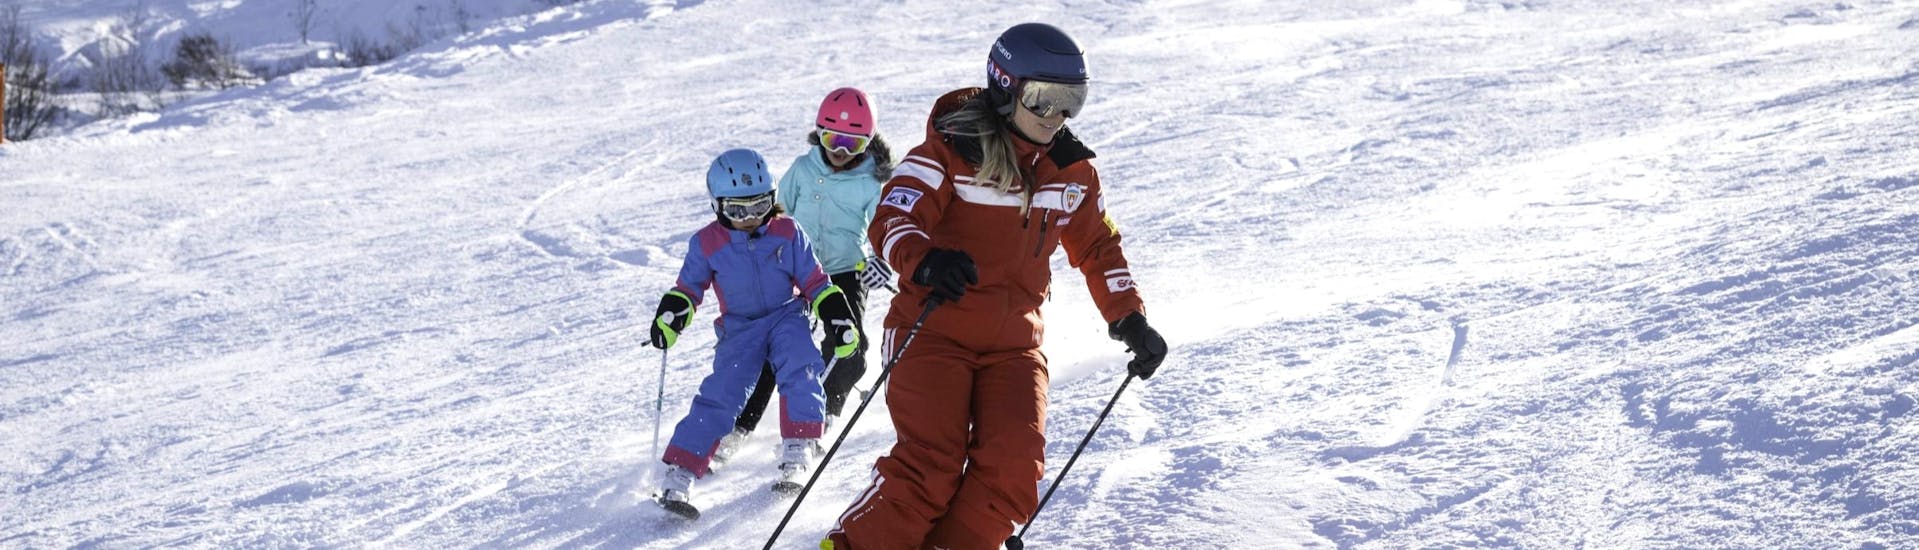 Skilessen voor kinderen vanaf 3 jaar.